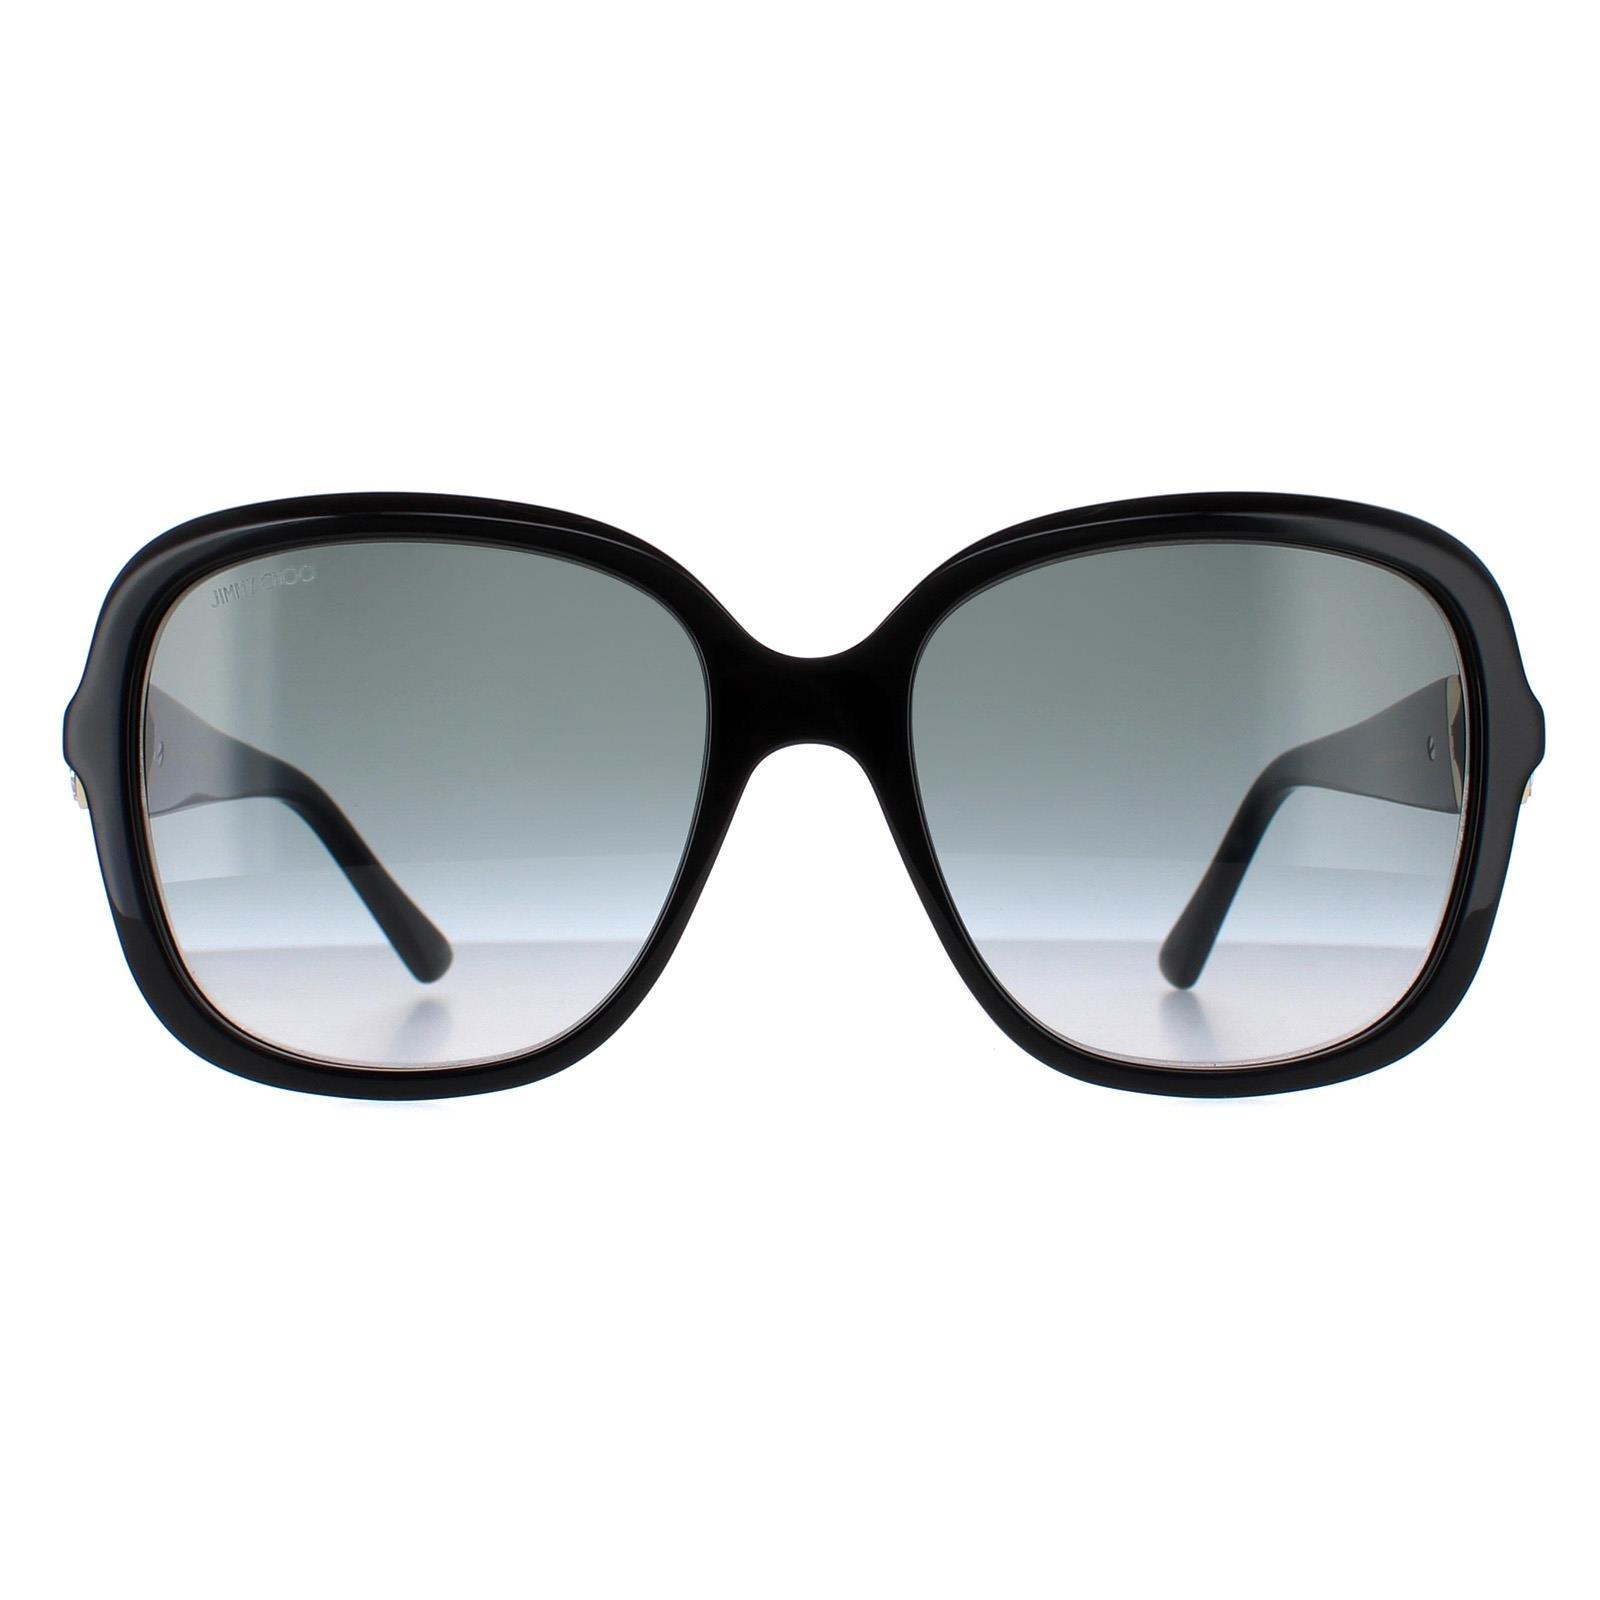 Квадратный Черный Темно-Серый Градиент SADIE/S Jimmy Choo, черный солнцезащитные очки jimmy choo sonny s 9f6